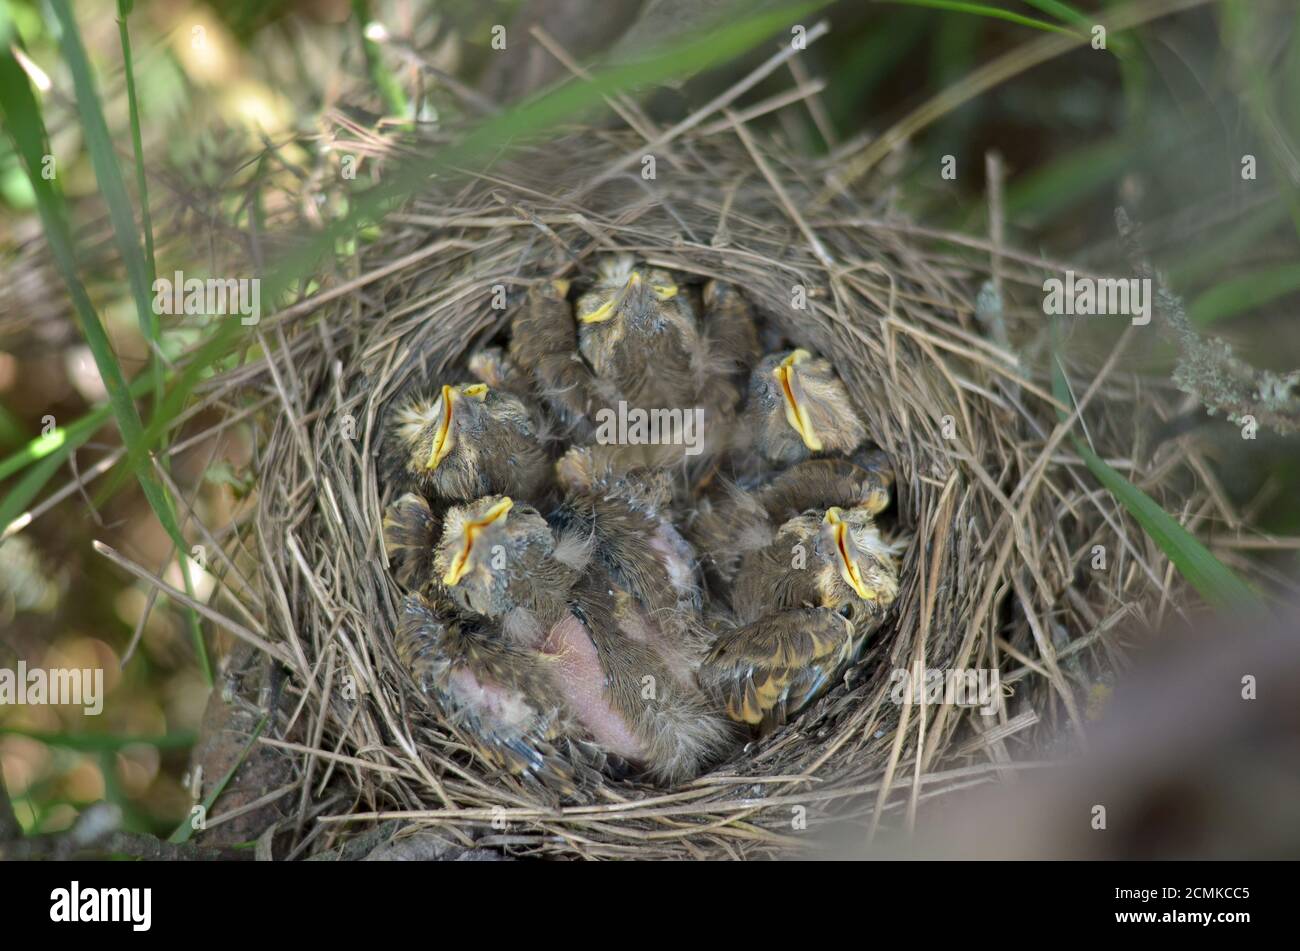 Fünf Nestlinge eines Song Thrush (Turdus philomelos) im Nest in ihrem natürlichen Lebensraum. Fauna der Ukraine. Geringe Schärfentiefe, Nahaufnahme. Stockfoto